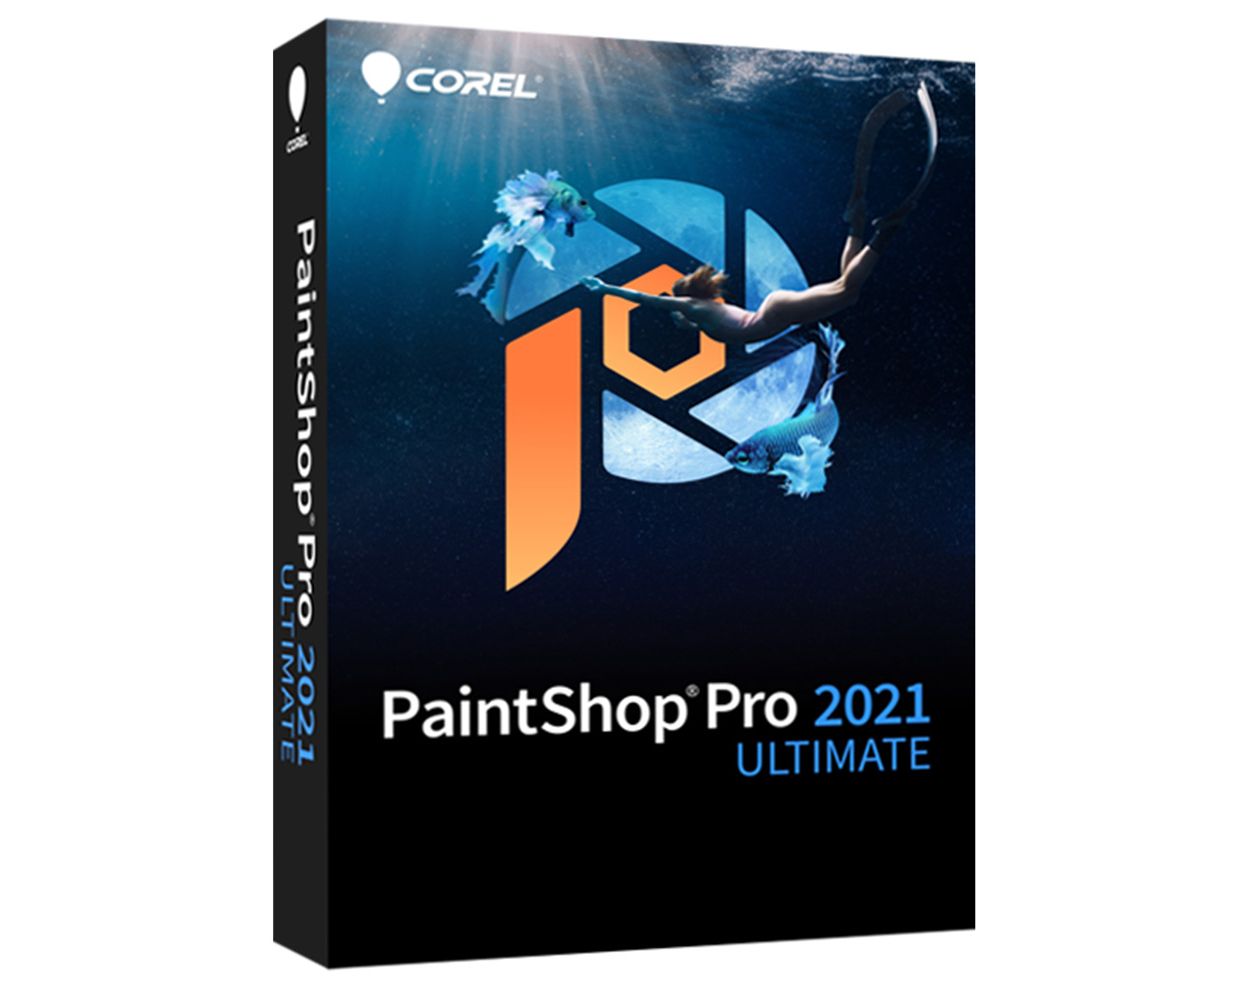 Download paintshop pro 2021 ultimate